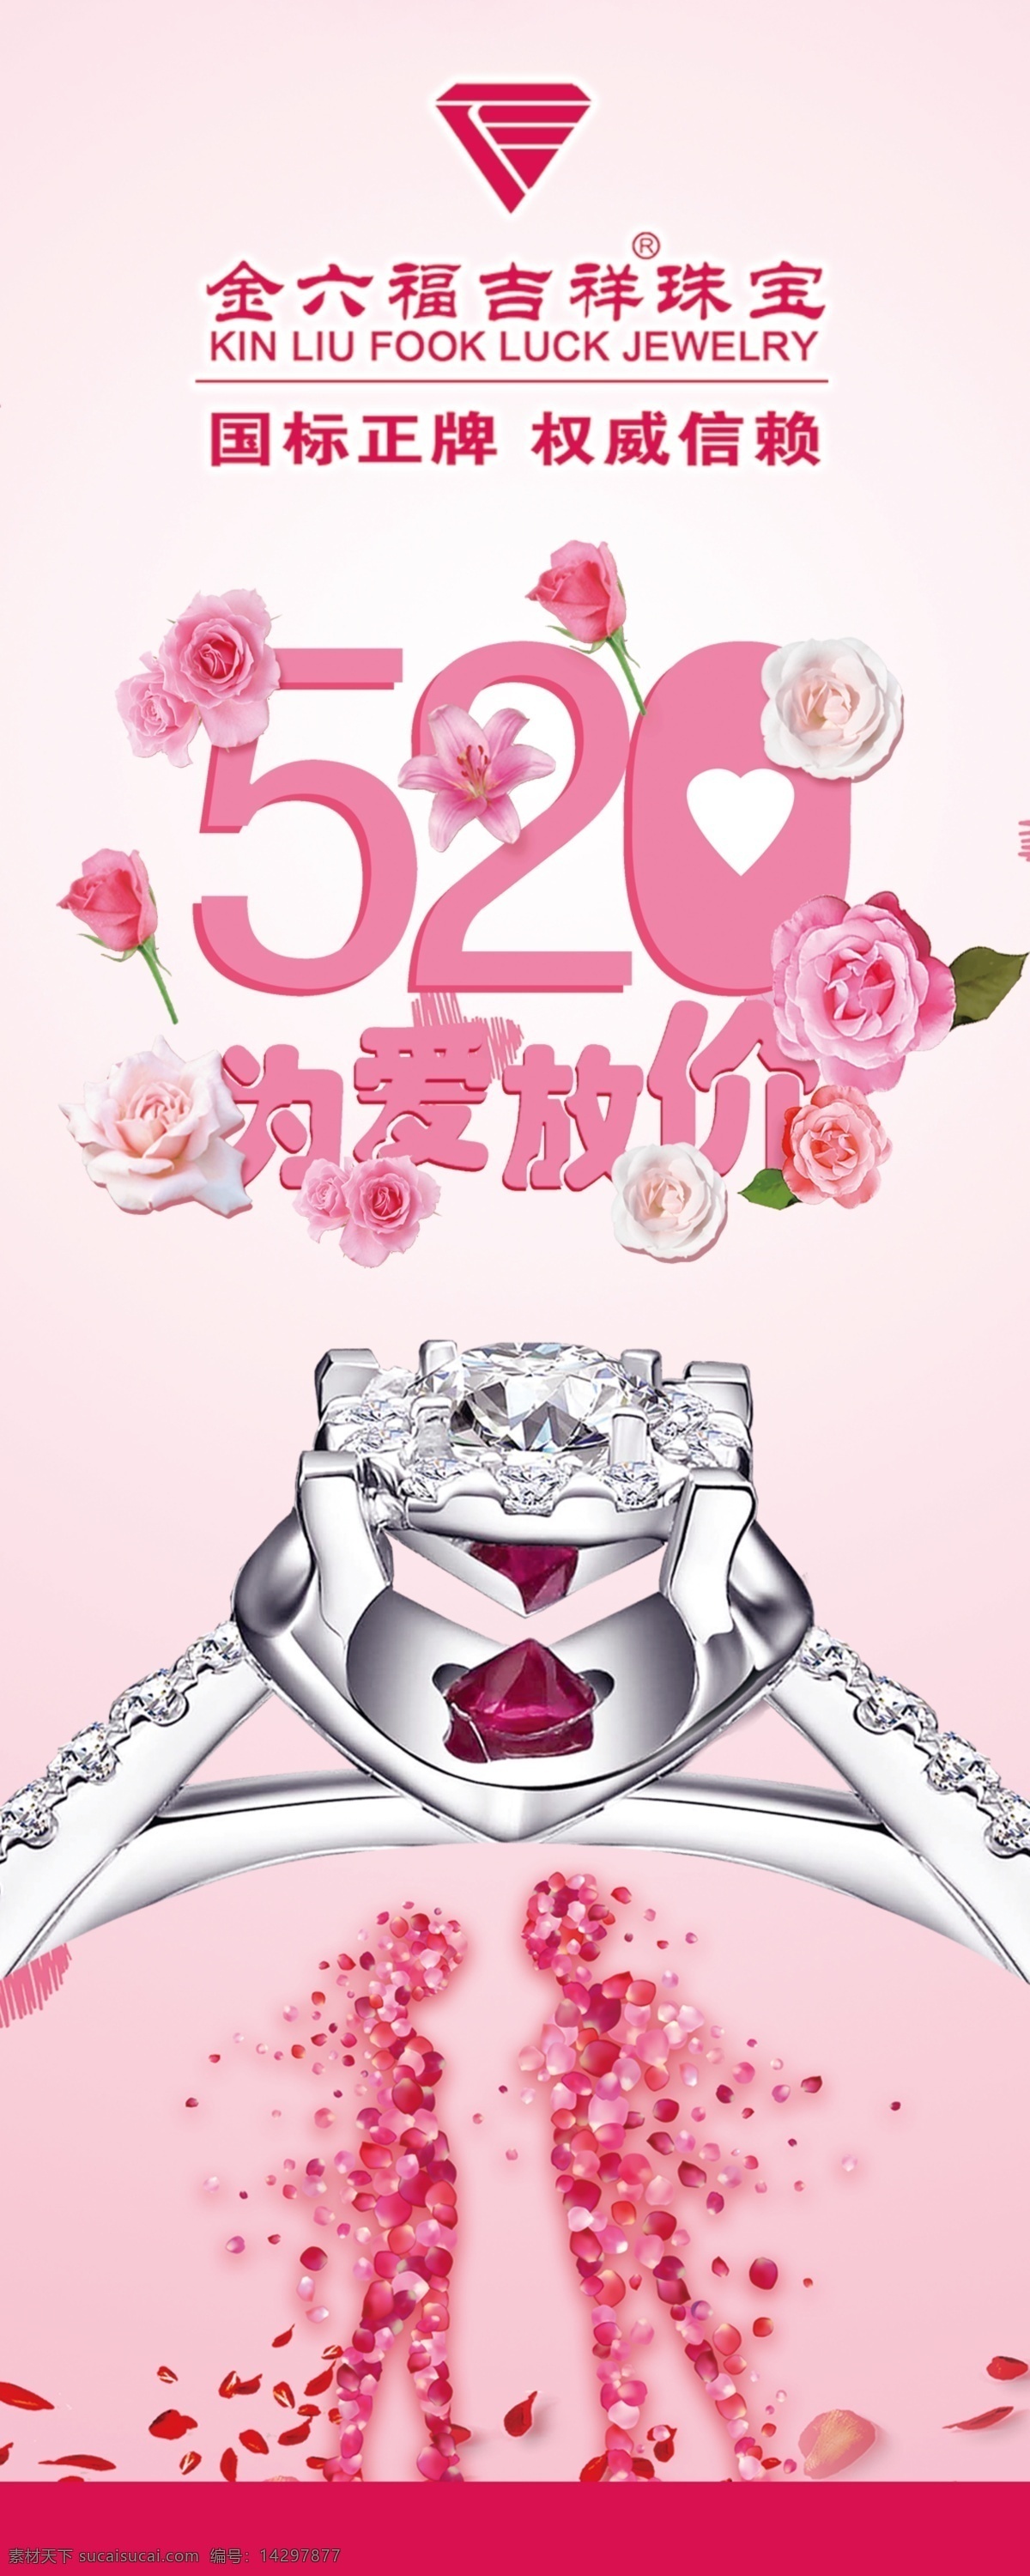 520 爱 放 价 珠宝首饰 钻石 展架画面 粉色 花瓣人 浪漫 花朵 戒指